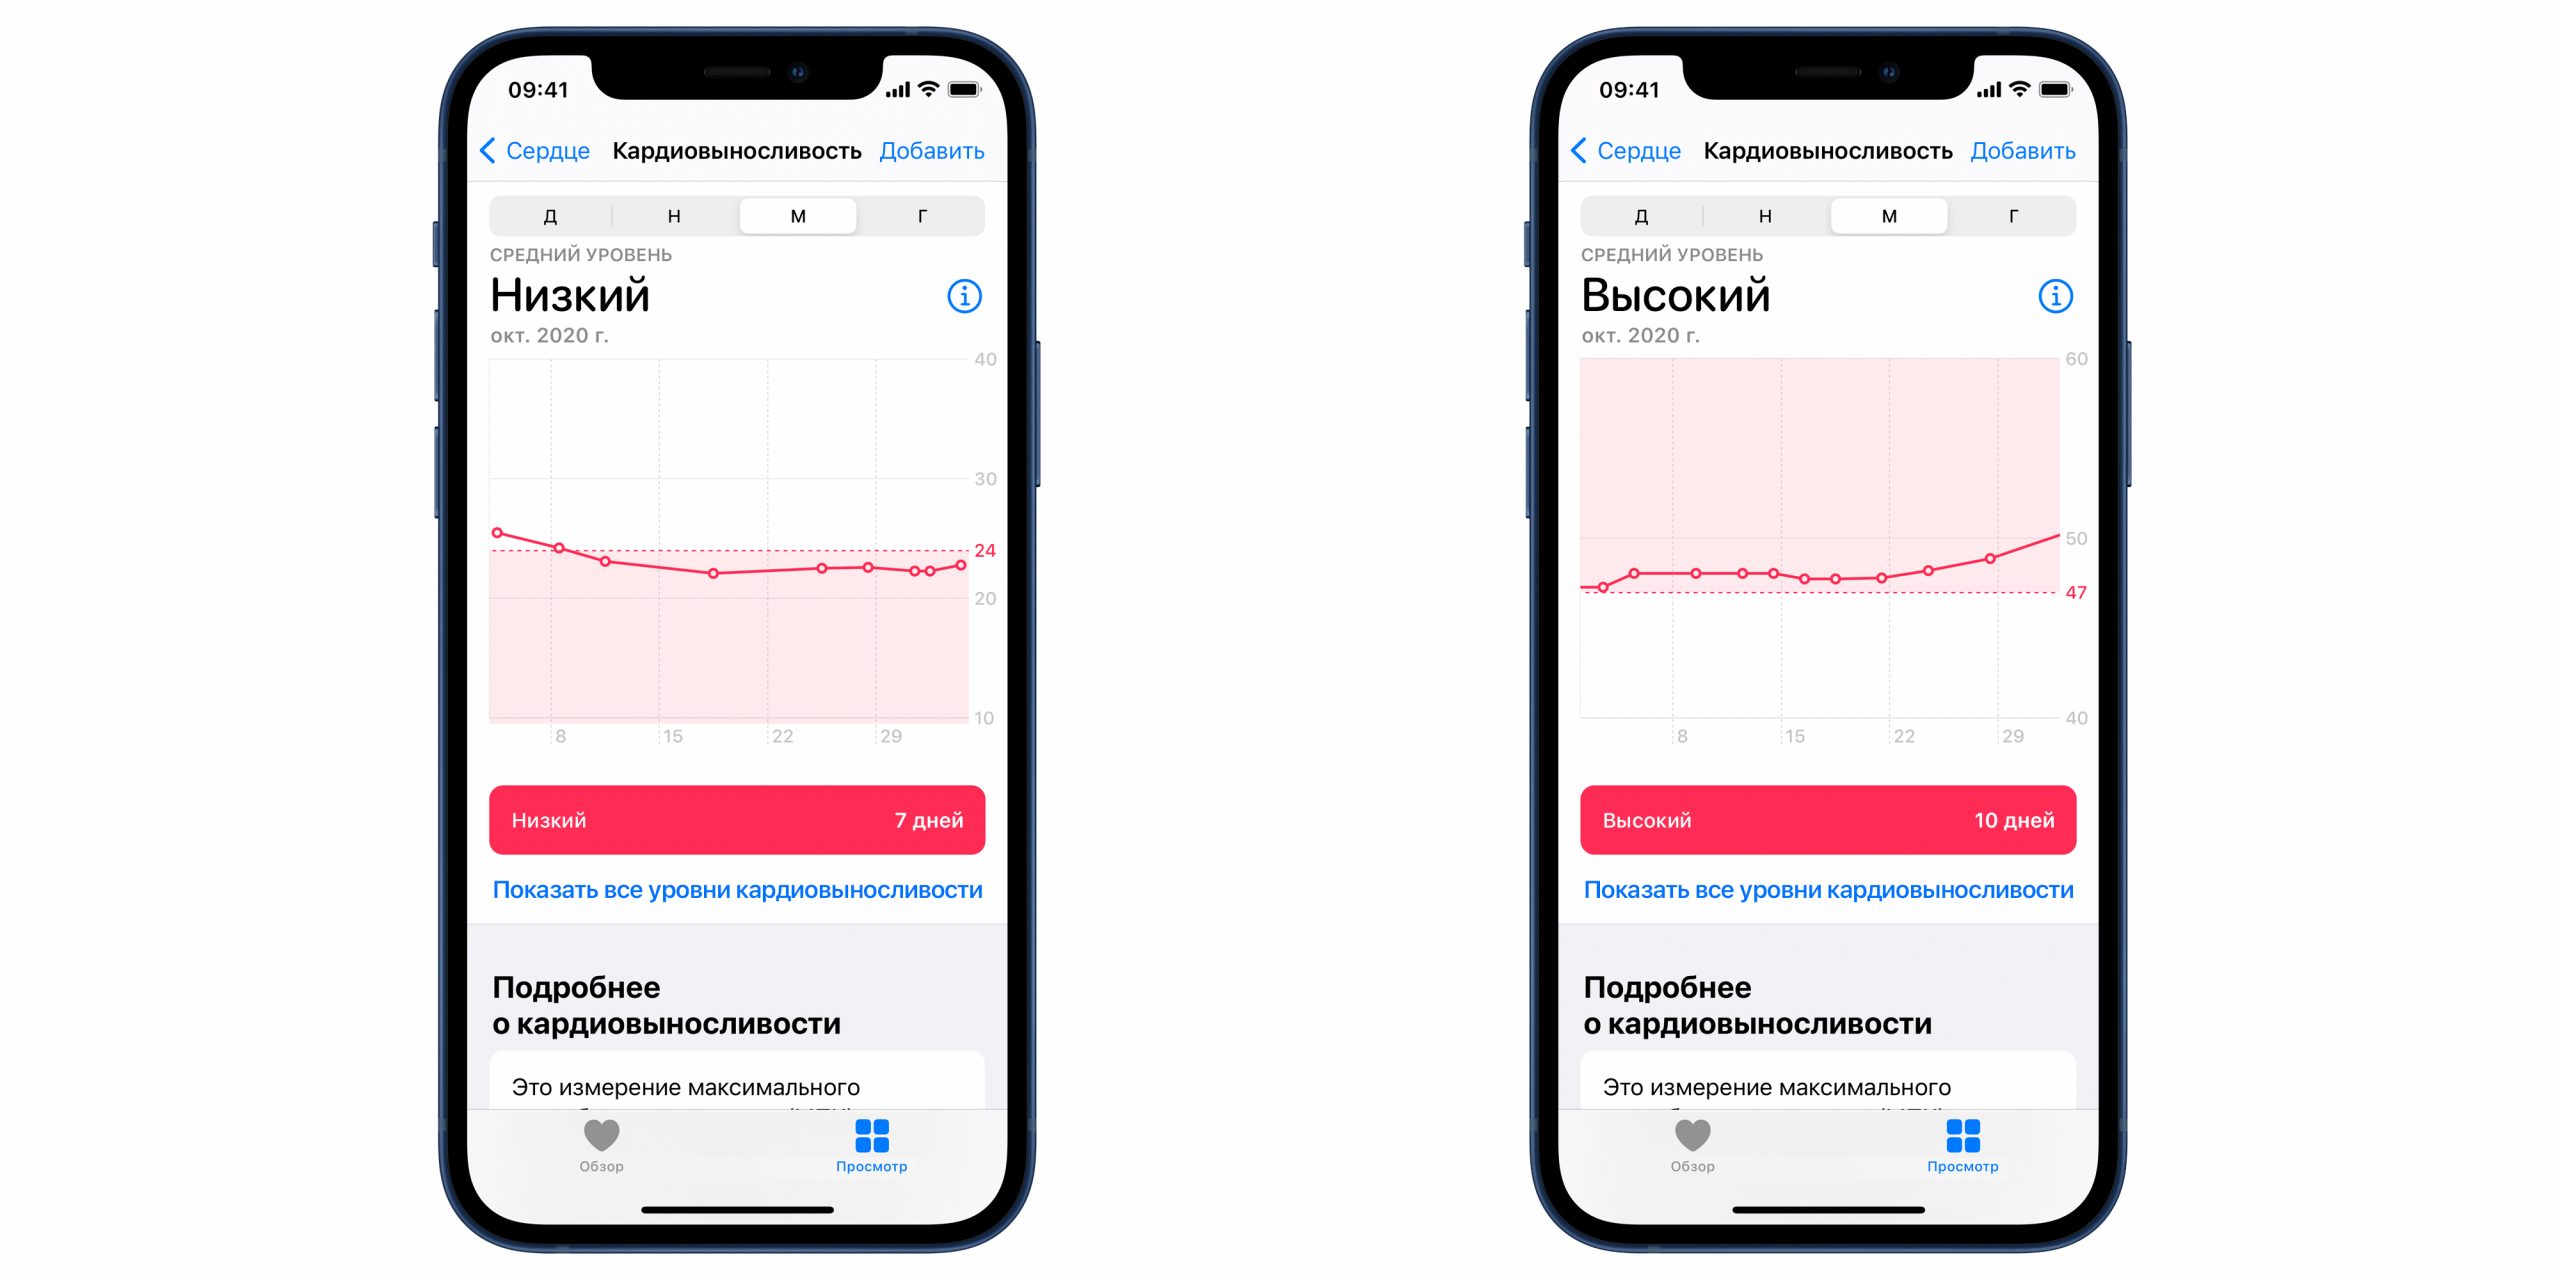 На Apple Watch появилась оценка кардиовыносливости